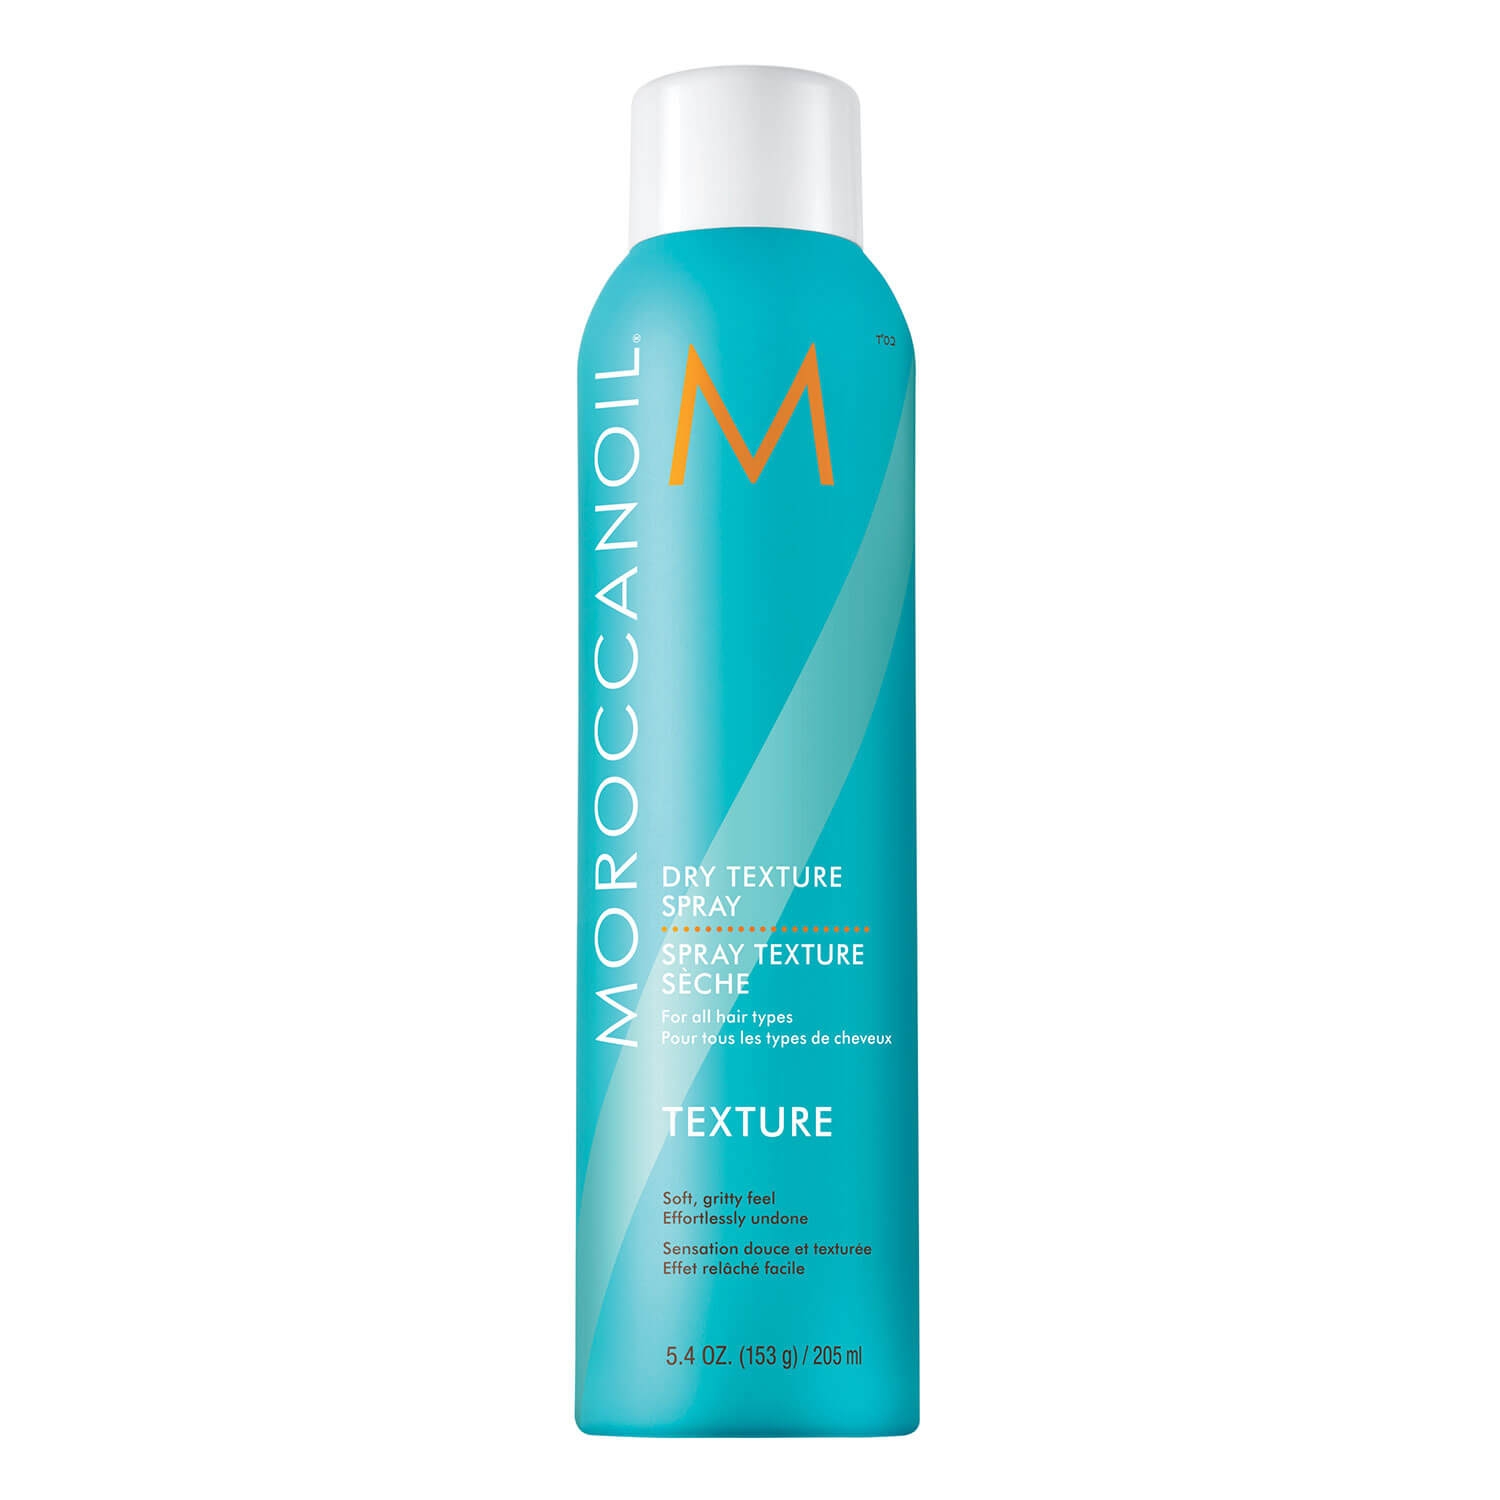 Produktbild von Moroccanoil - Dry Texture Spray